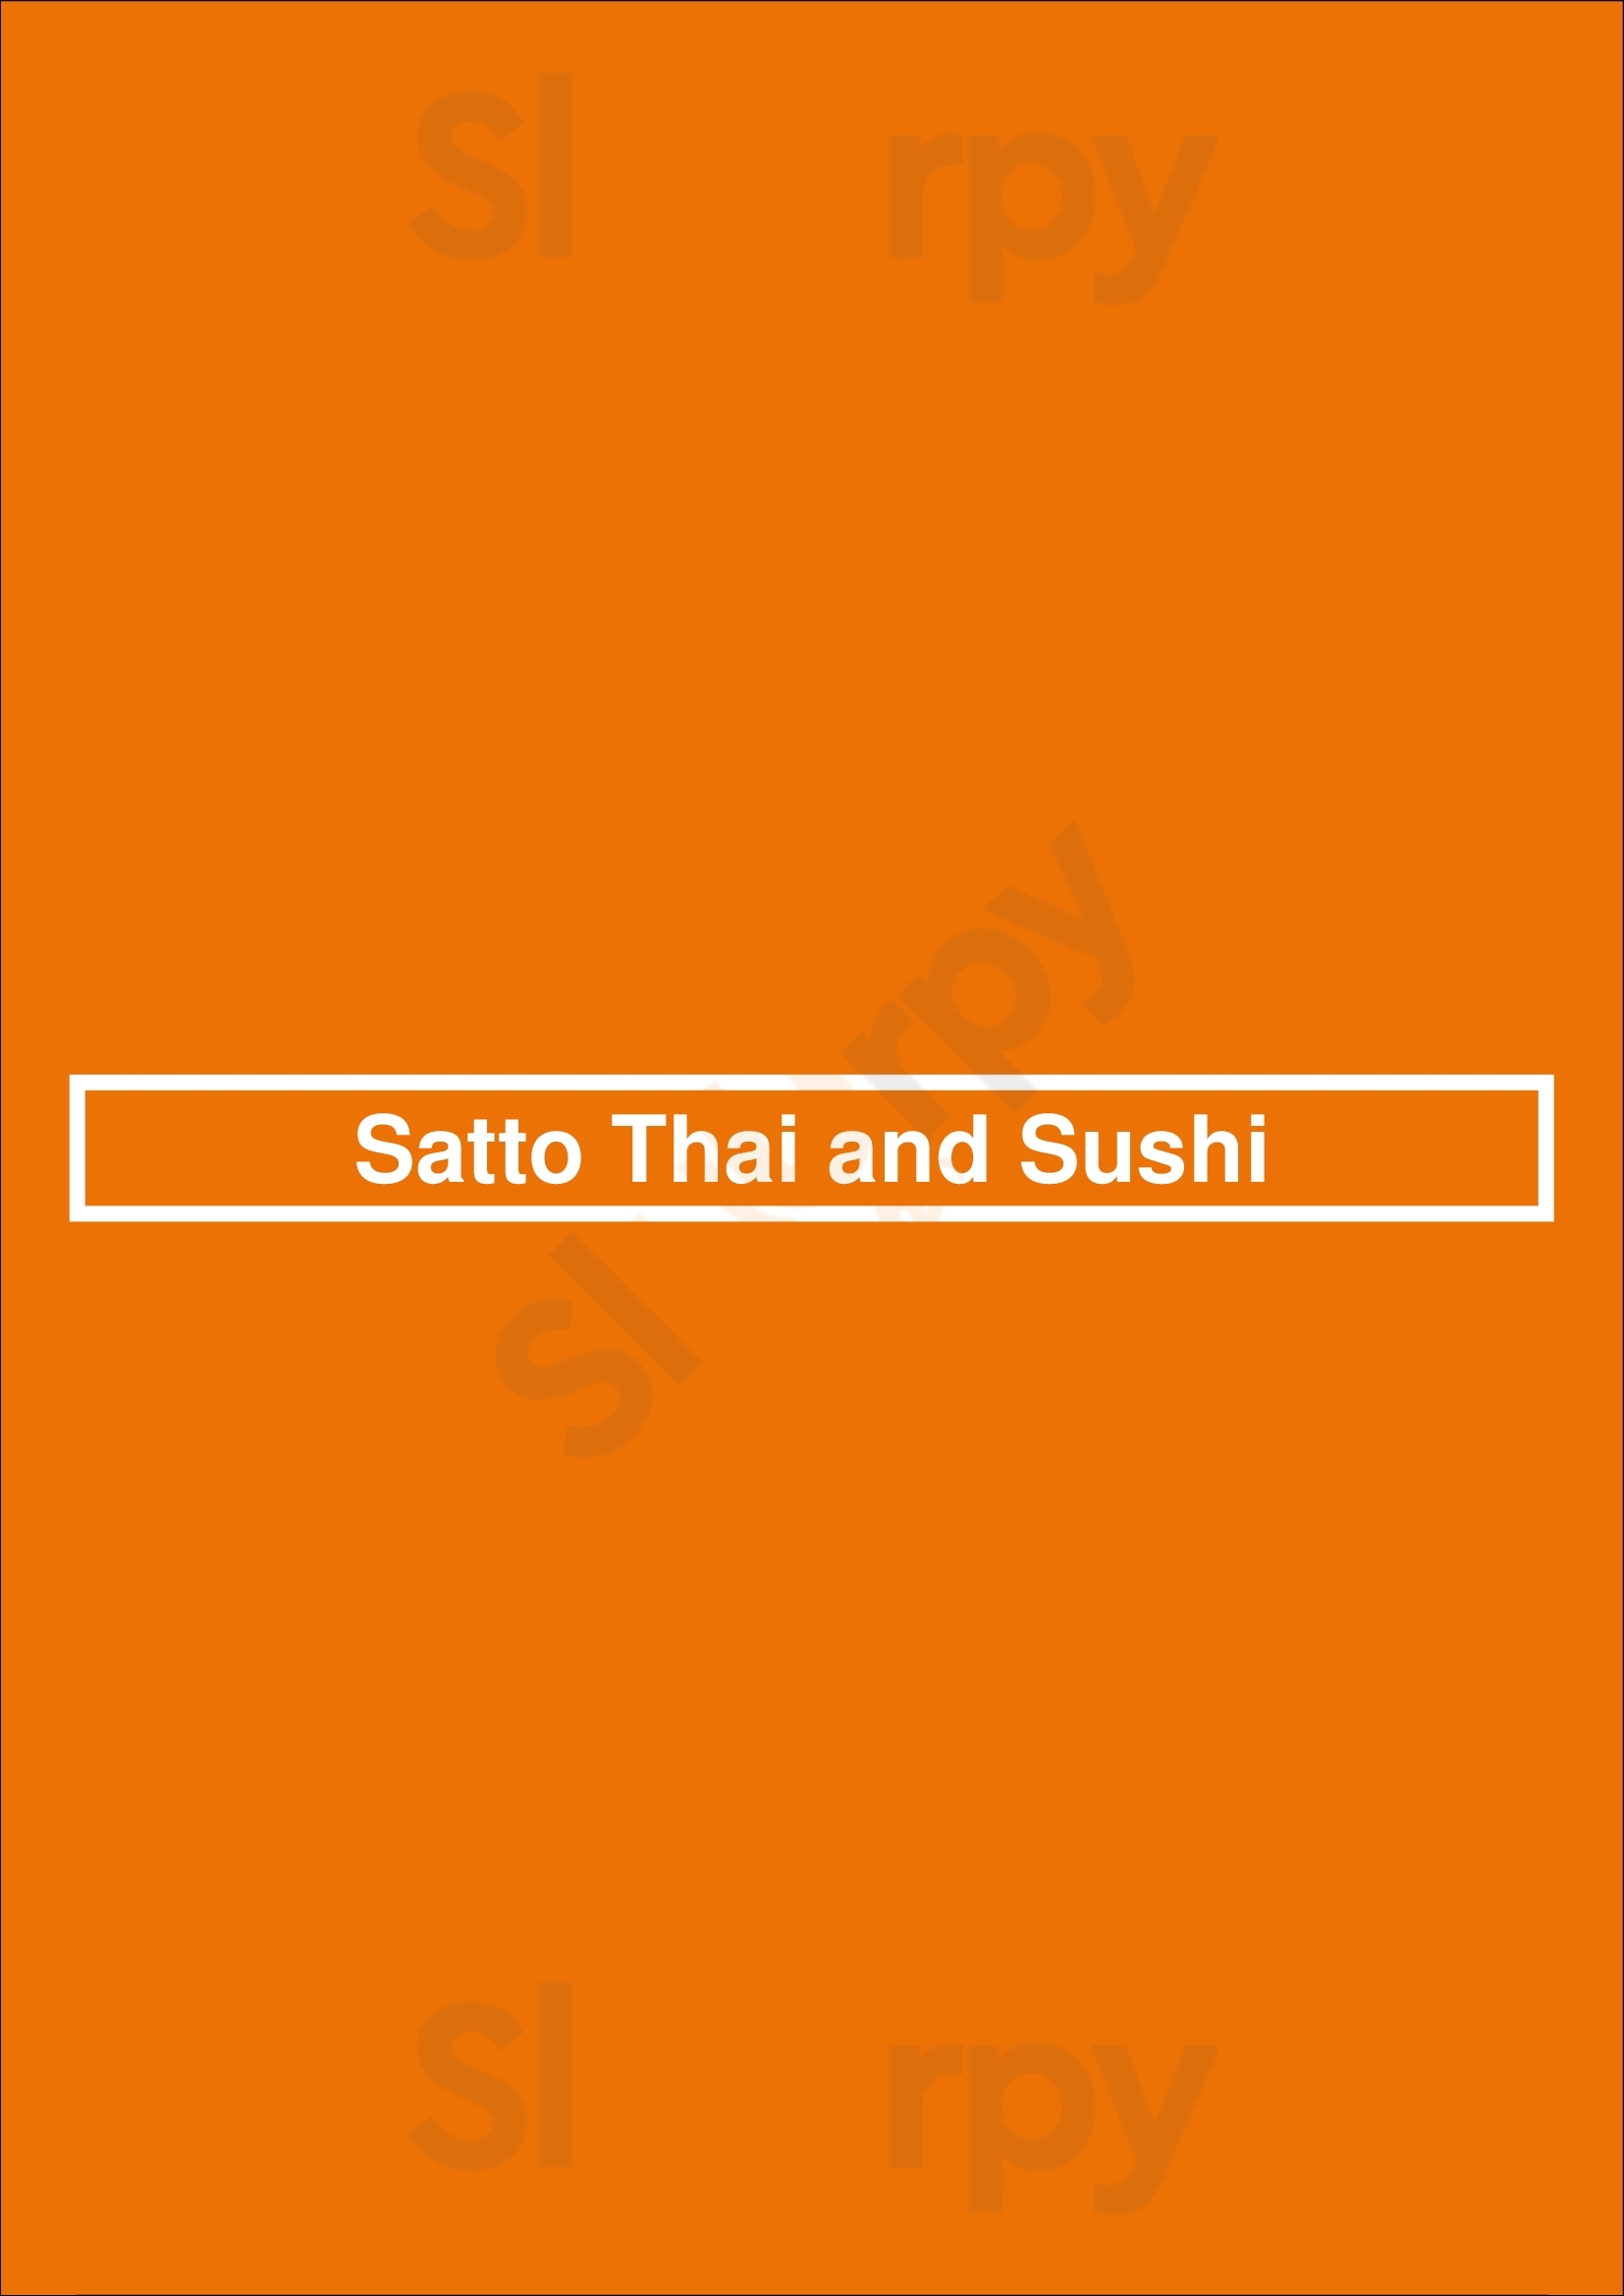 Satto Thai And Sushi Atlanta Menu - 1